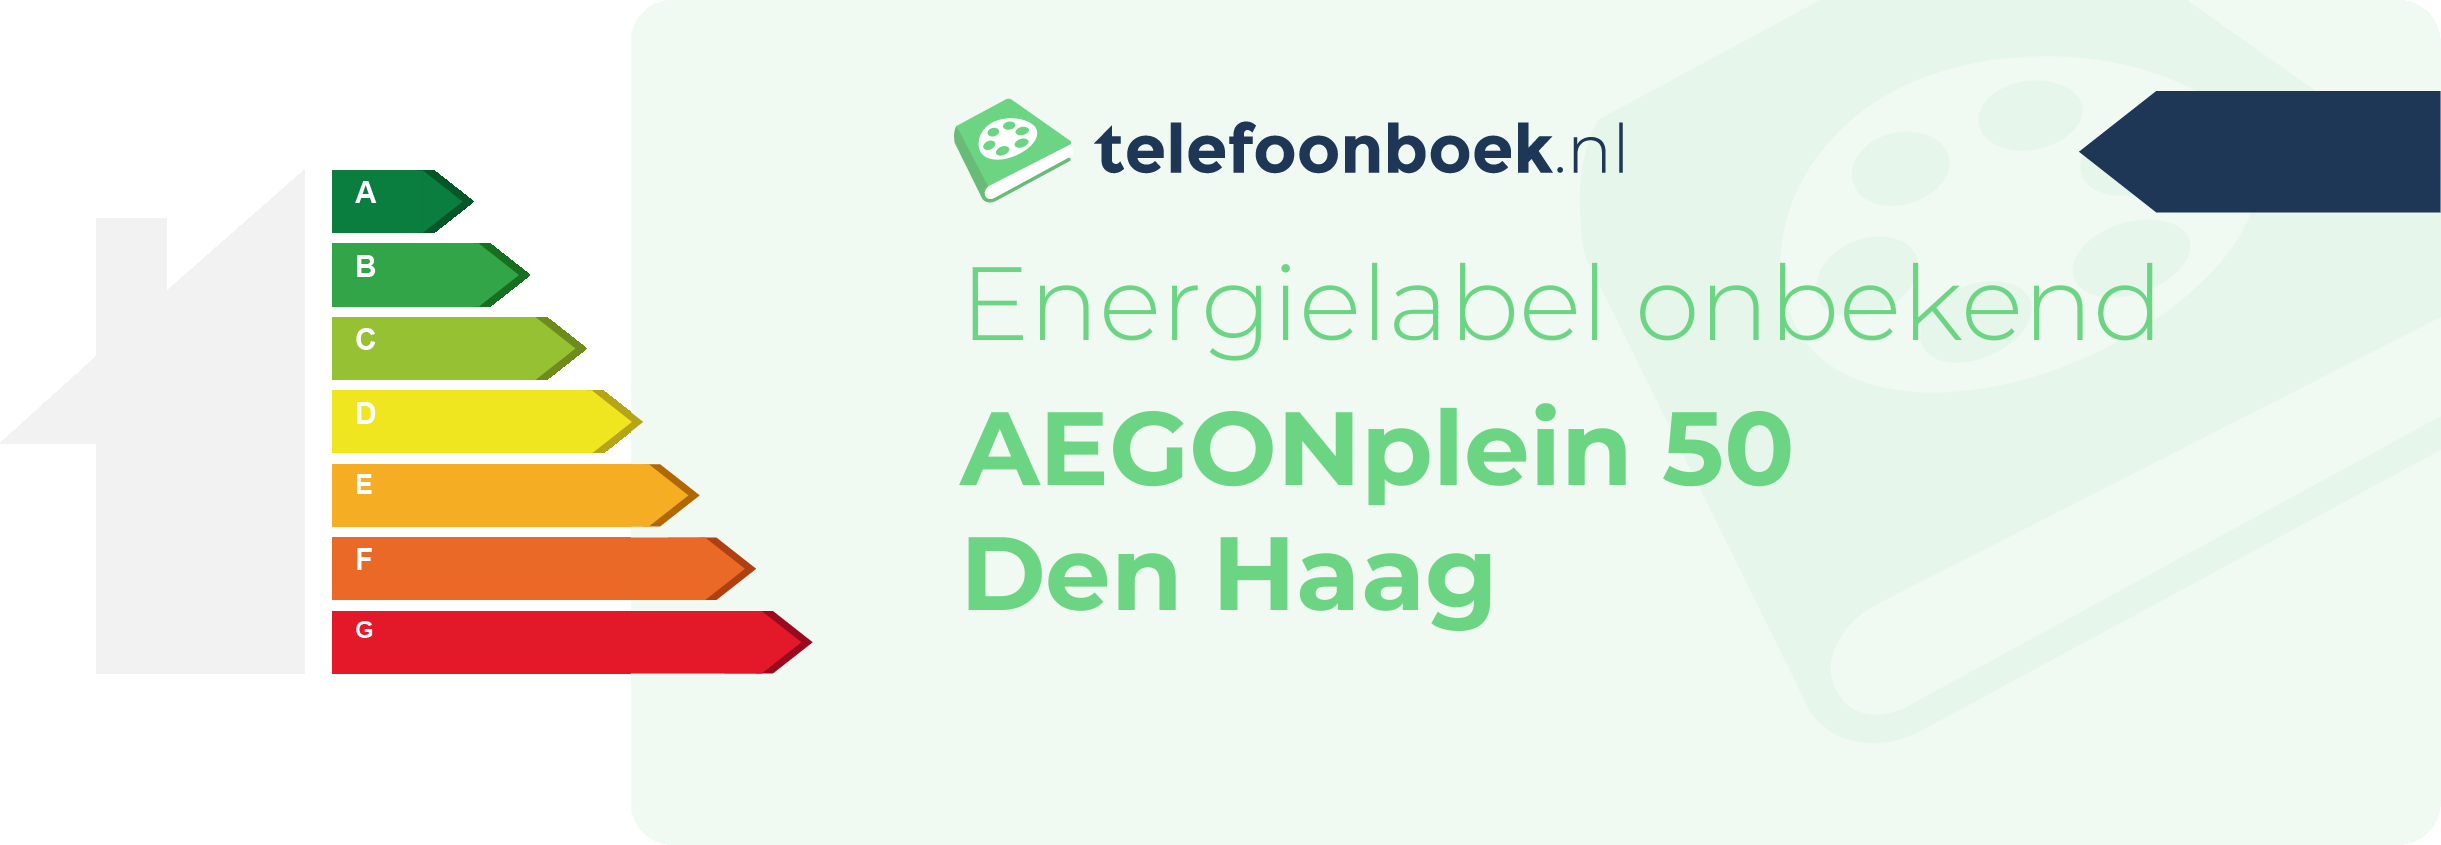 Energielabel AEGONplein 50 Den Haag